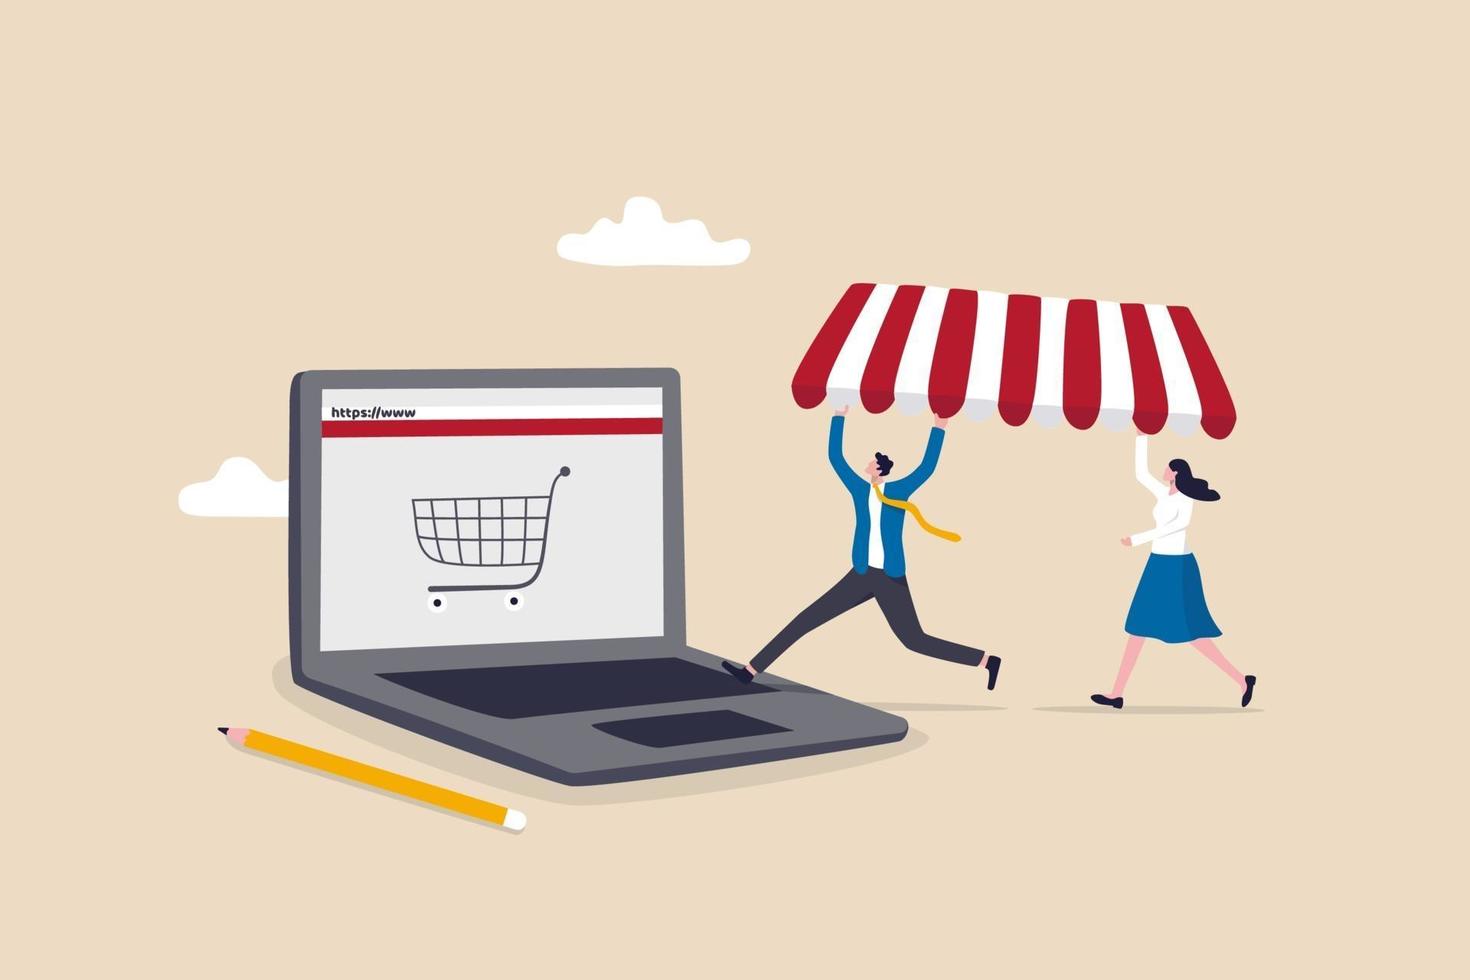 öppna butik online, starta e-handelsbutik som säljer produkter online vektor